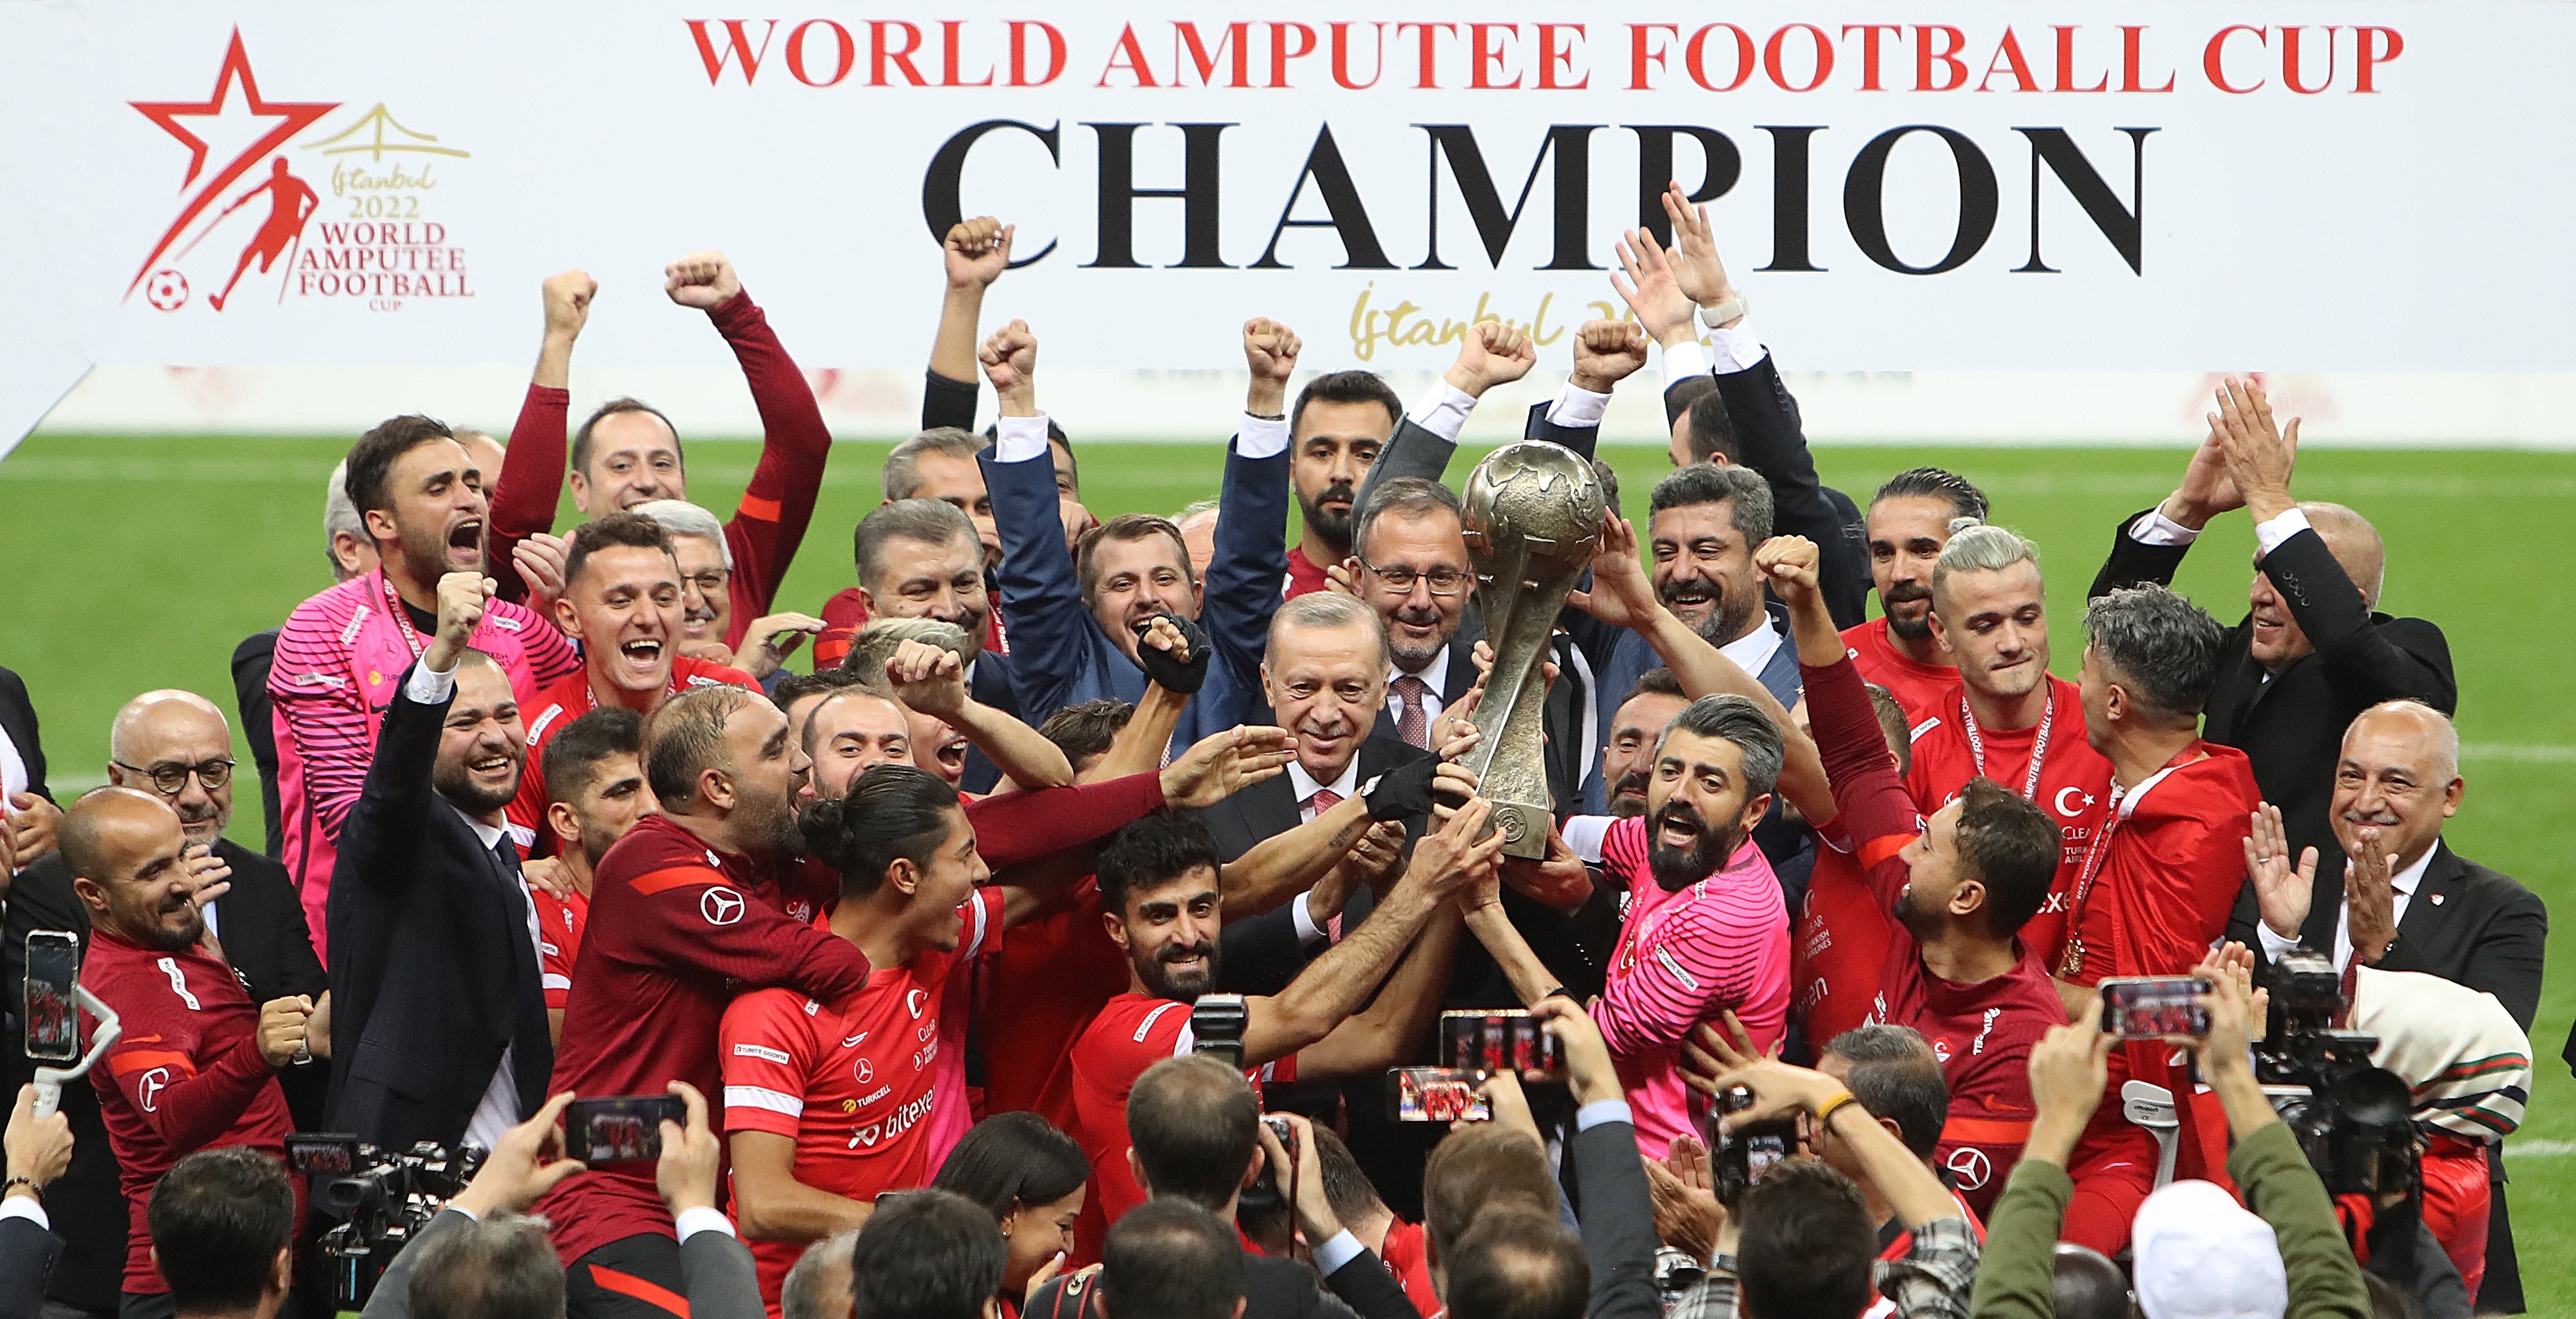 Ampute Milli Takımımız Dünya Şampiyonu